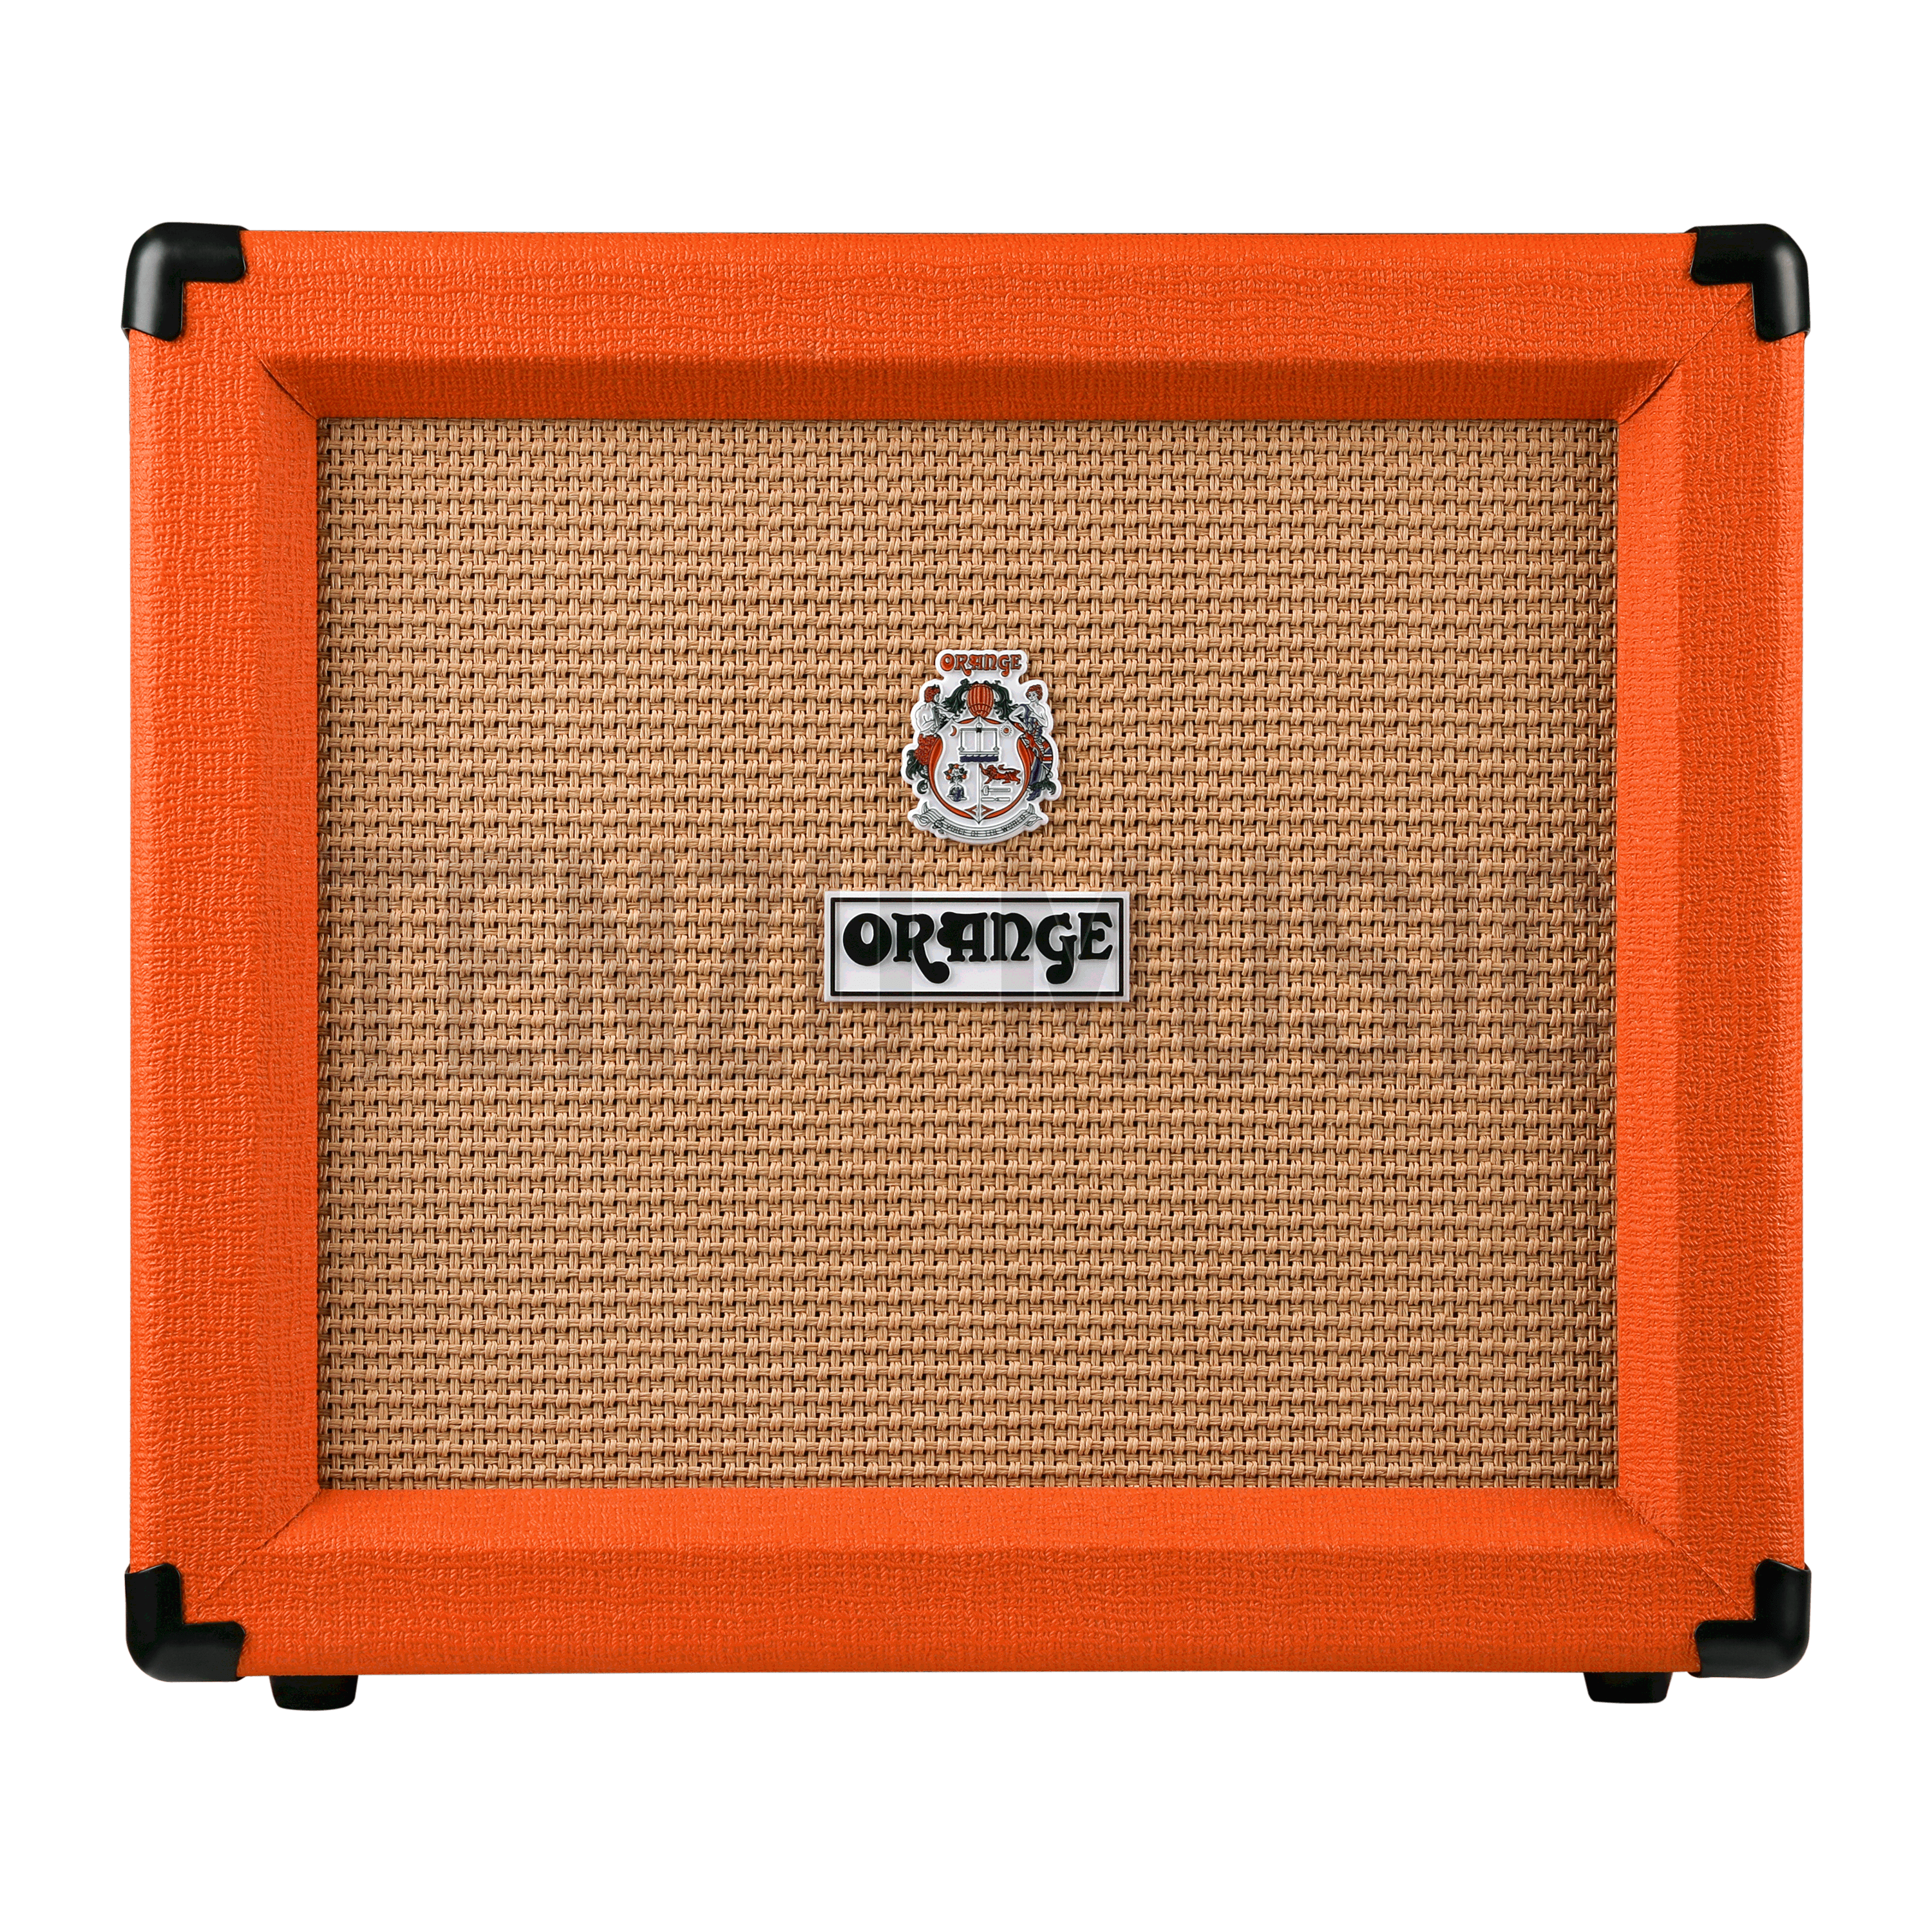 آمپلی فایر گیتار الکتریک Orange Crush 35RT 1x10" 35-watt Combo Amp